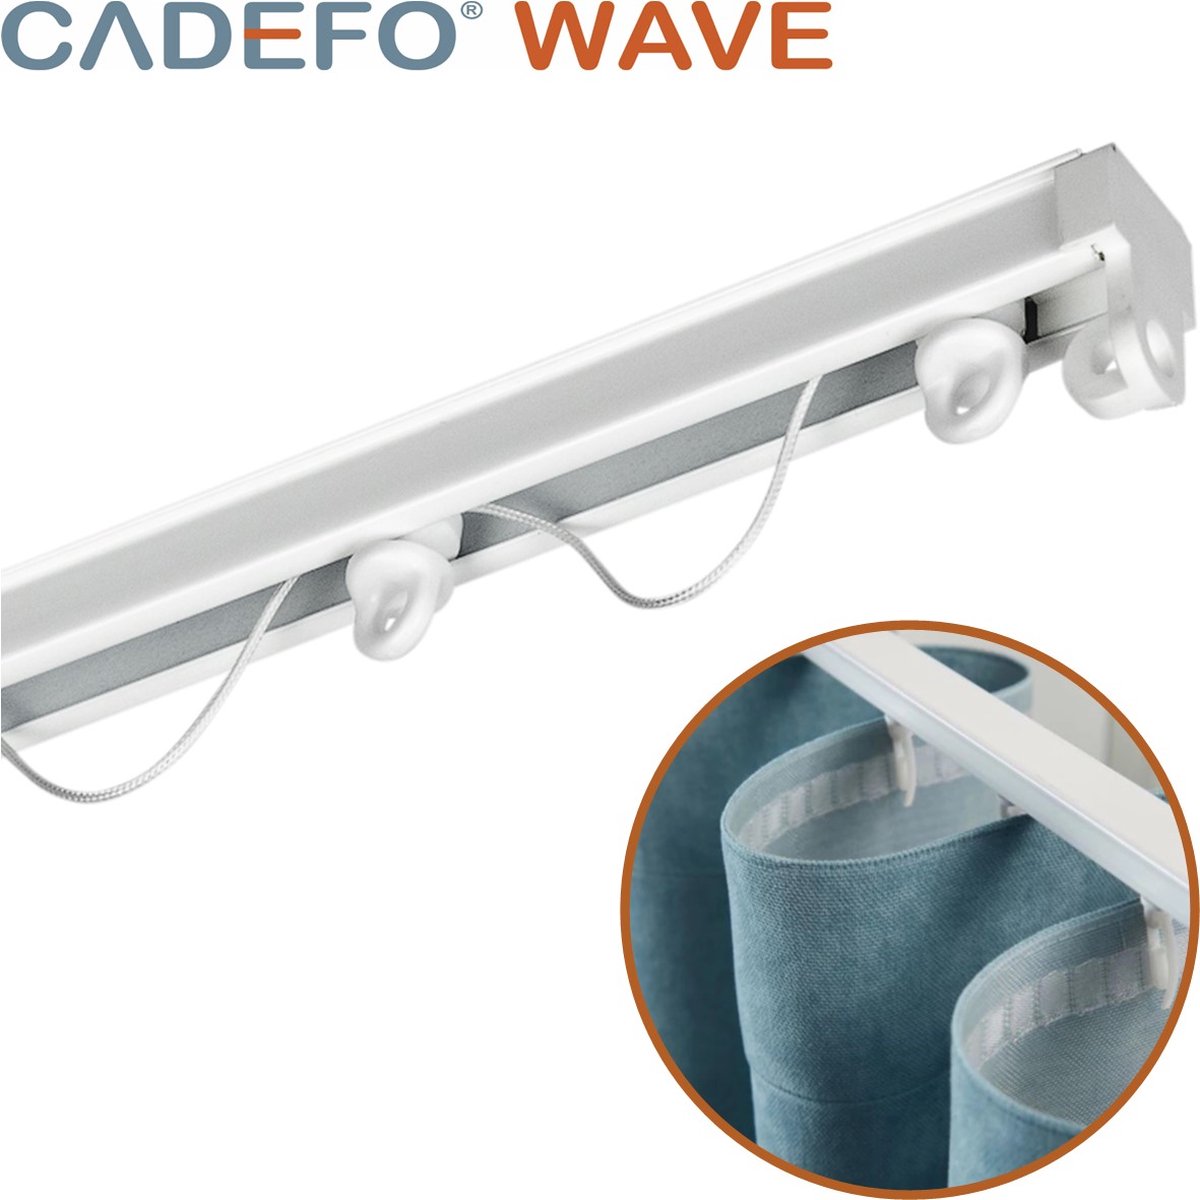 CADEFO WAVE (451 - 500 cm) Gordijnrails - Compleet op maat! - UIT 1 STUK - Leverbaar tot 6 meter - Plafondbevestiging - Lengte 459 cm